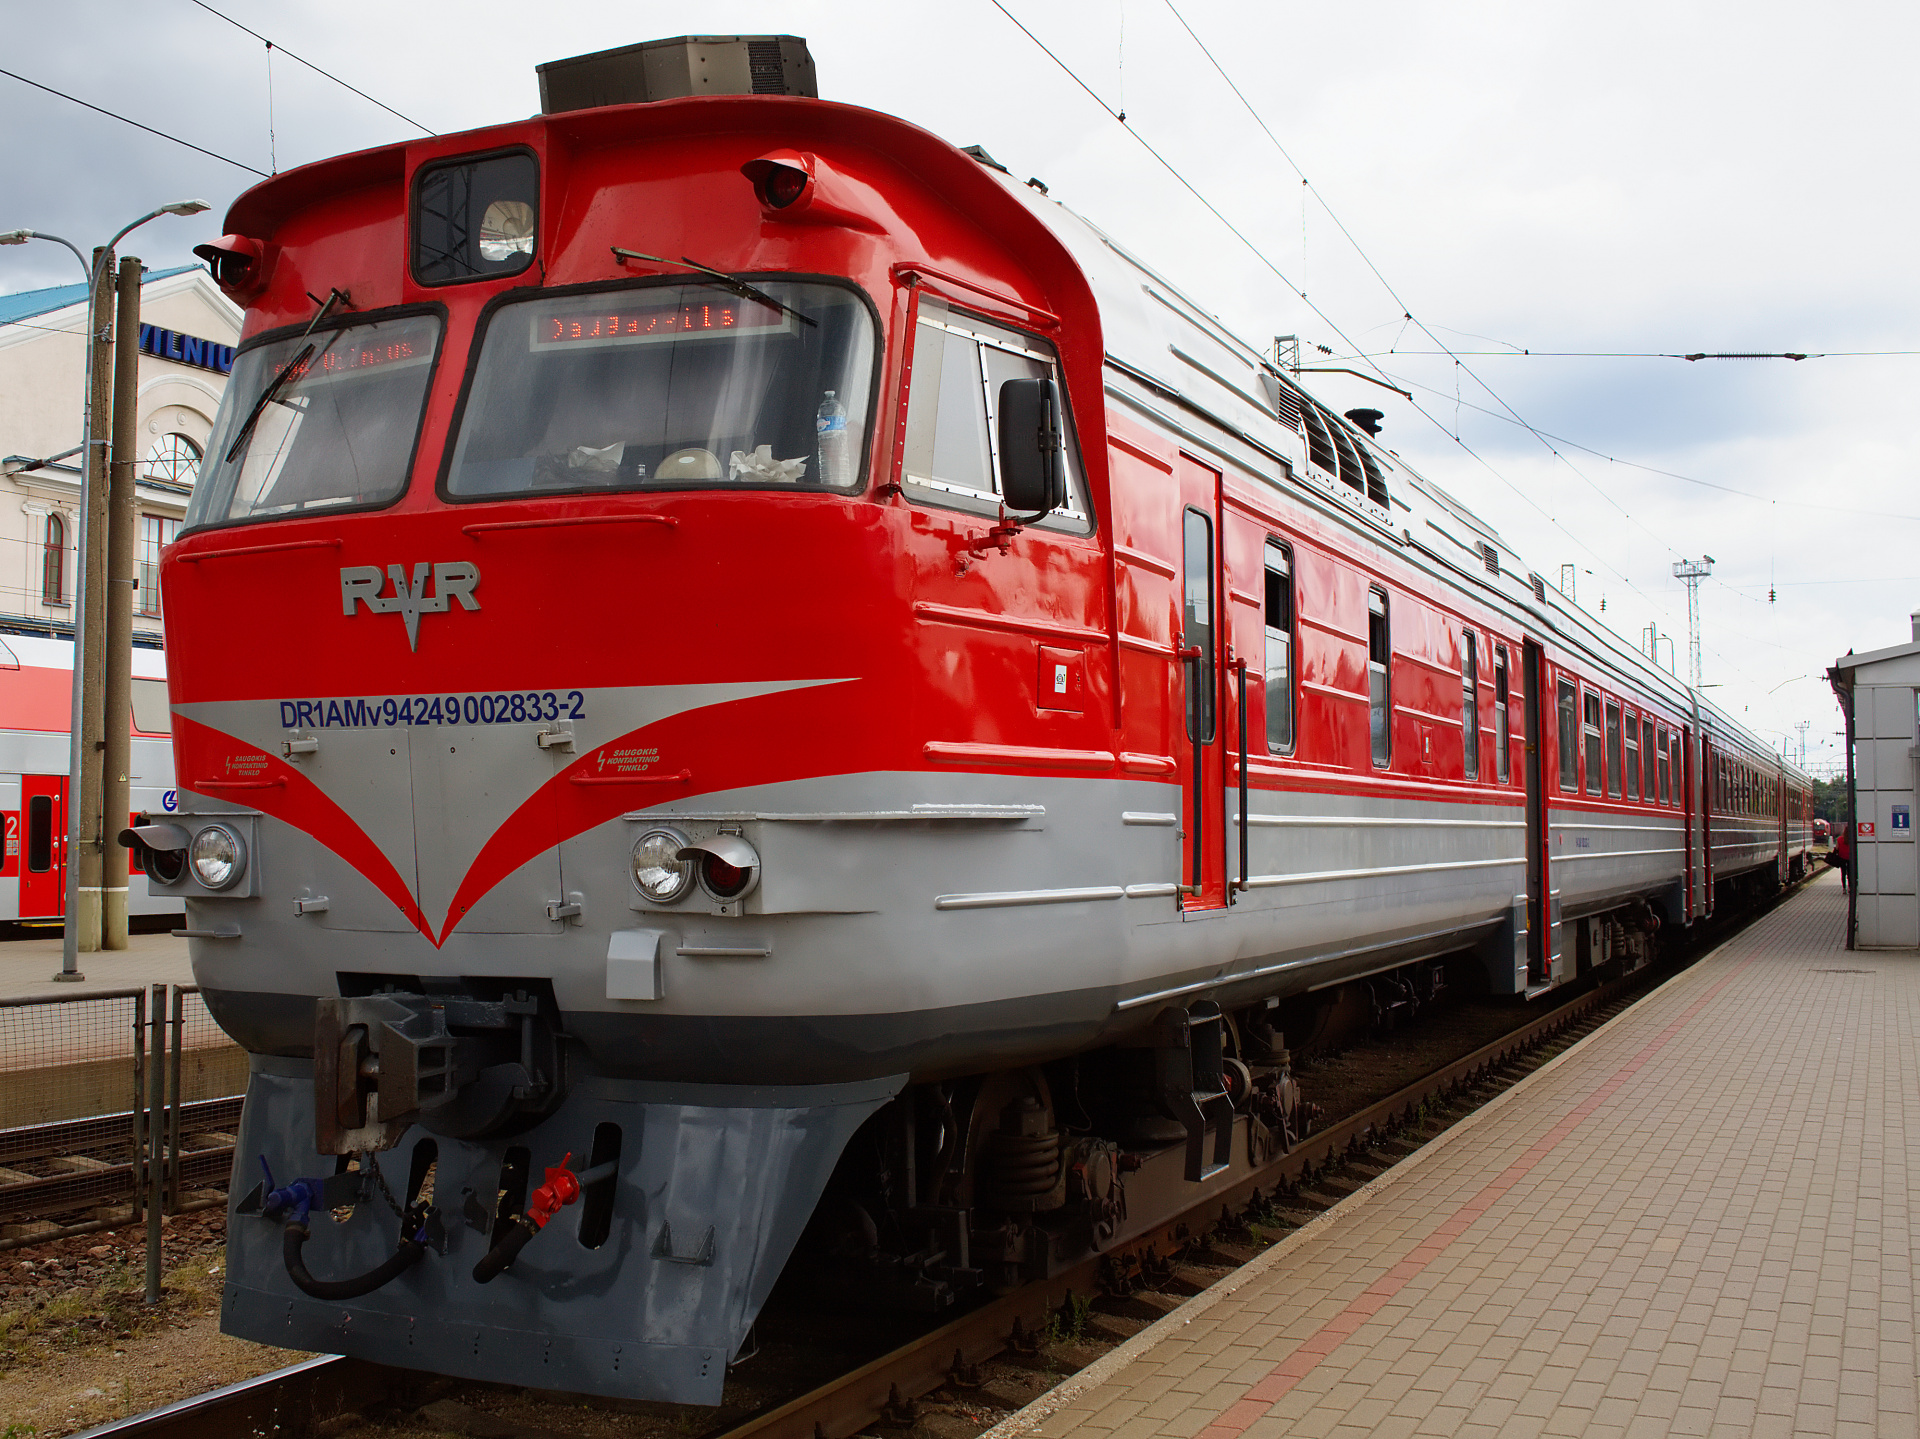 RVR DR1AM 833 (Podróże » Wilno » Pojazdy » Pociągi i lokomotywy)